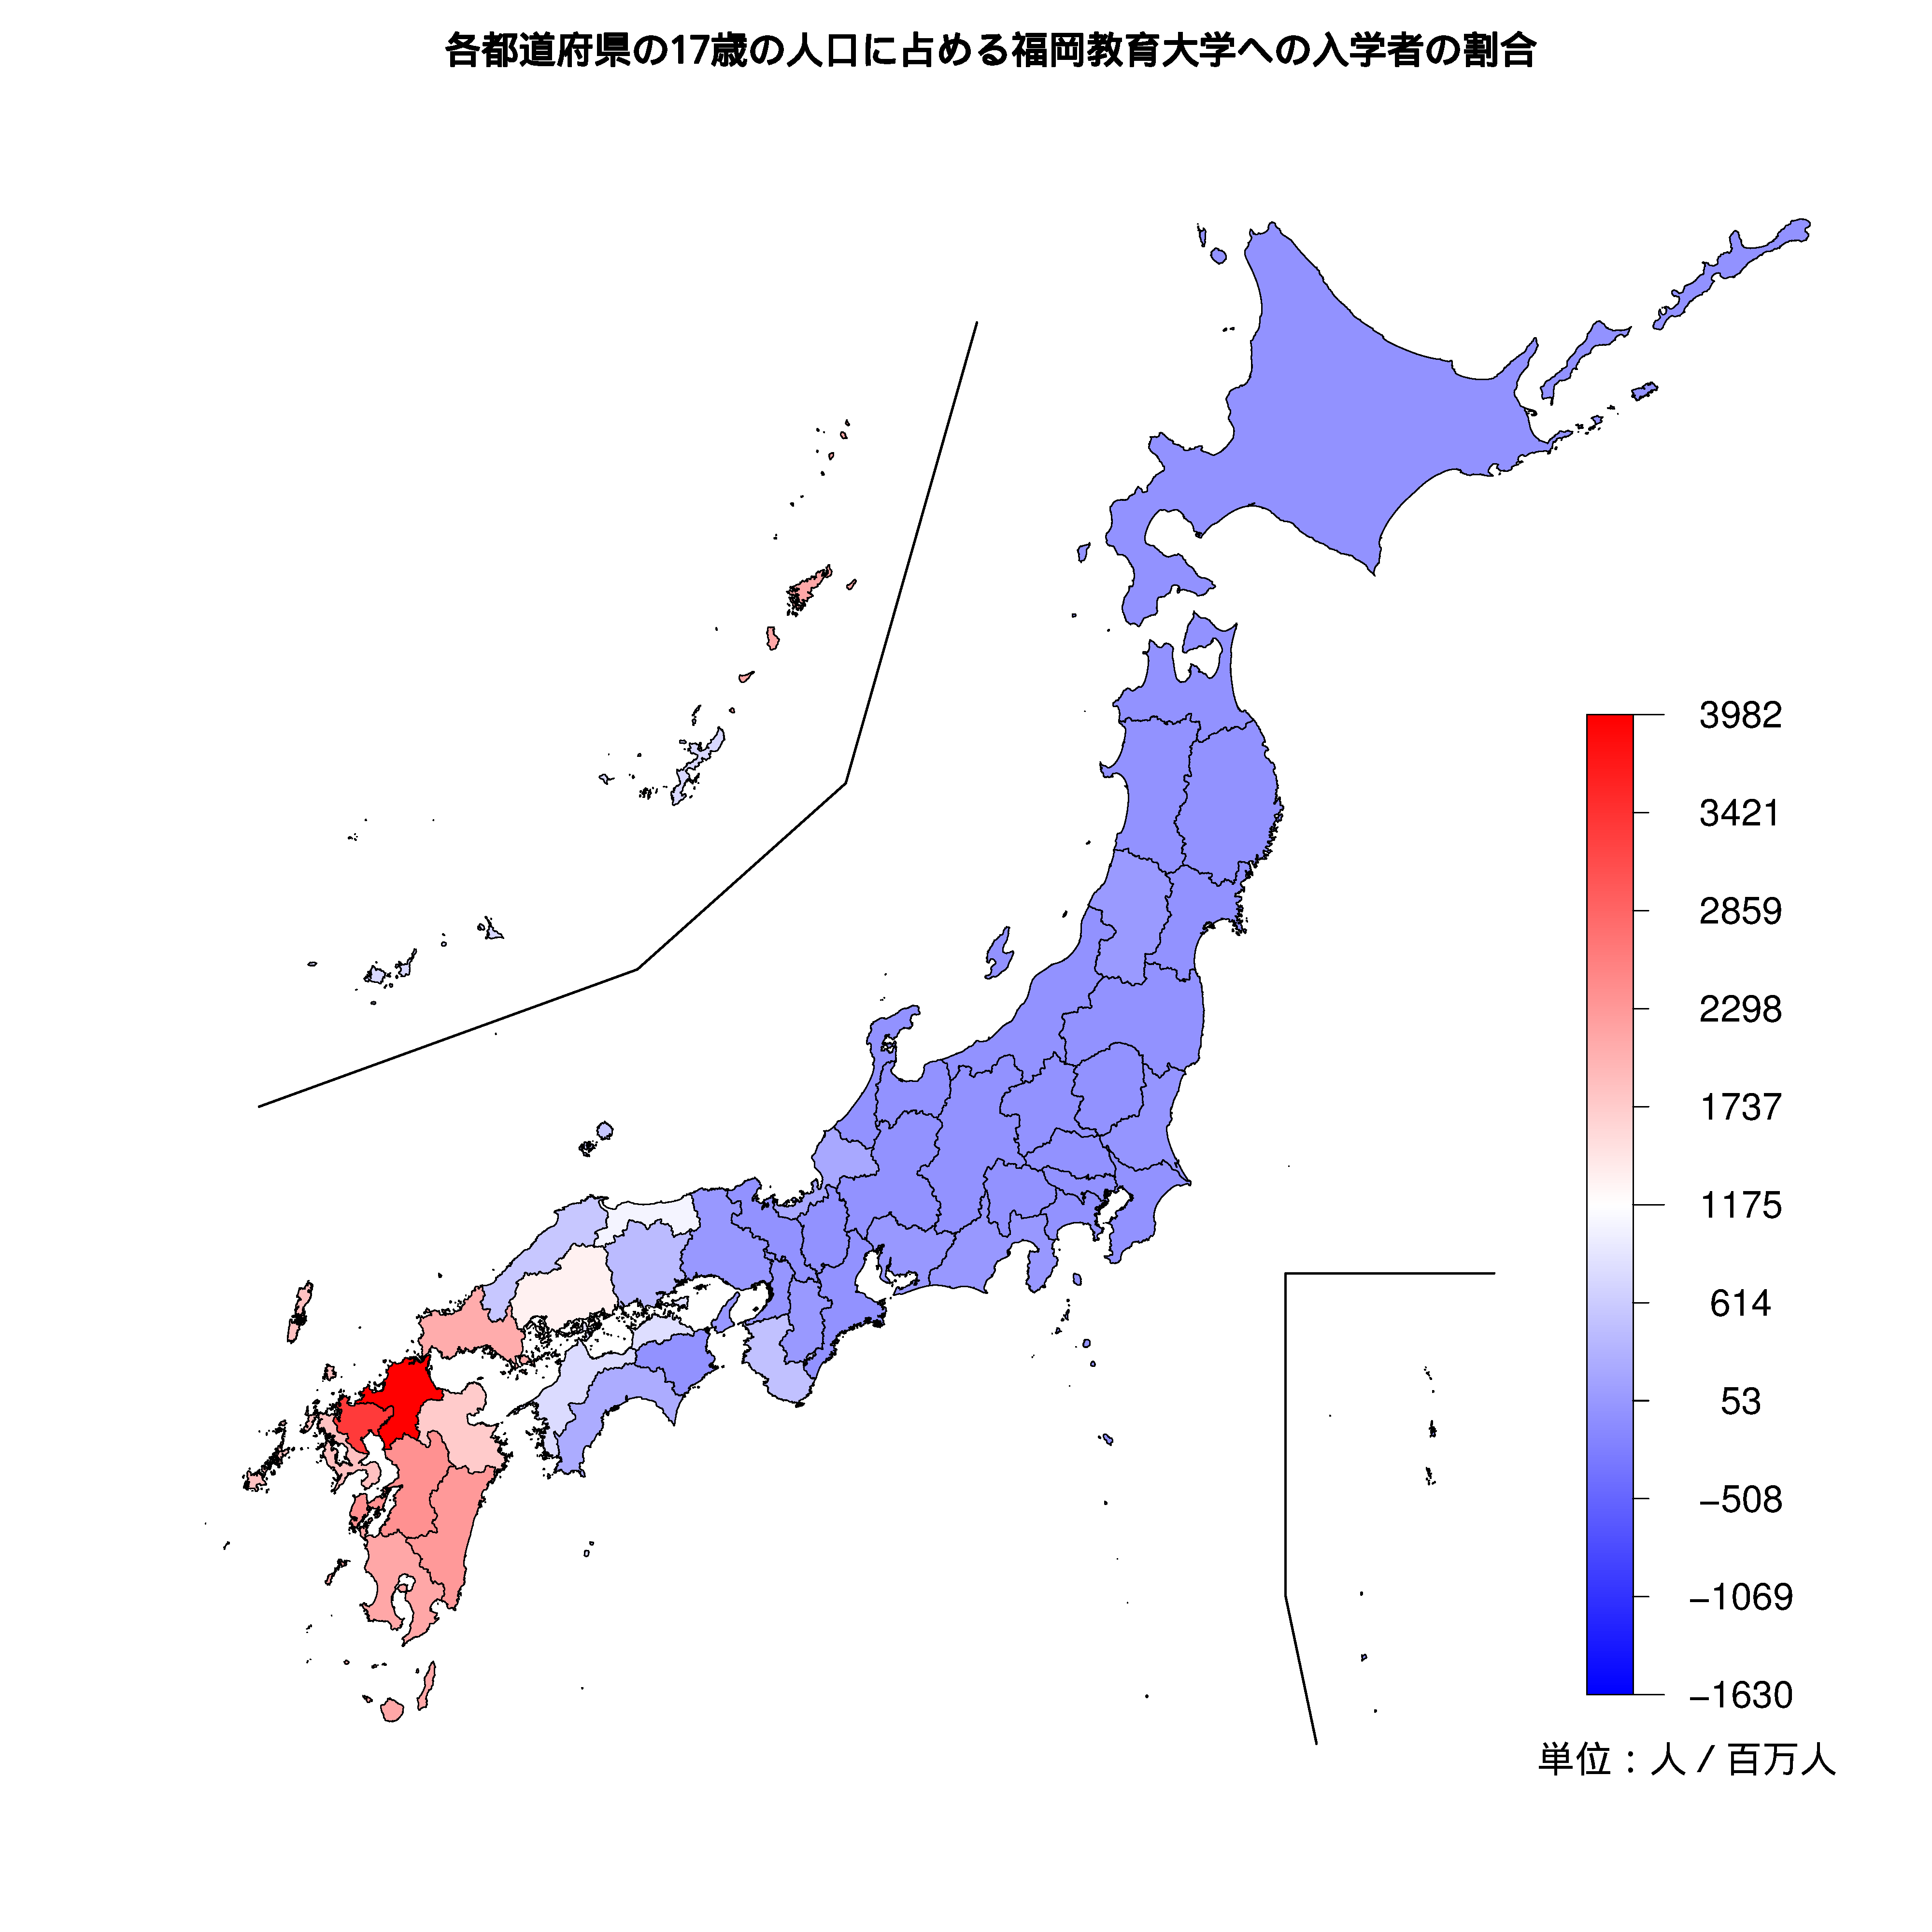 福岡教育大学への入学者が多い都道府県の色分け地図